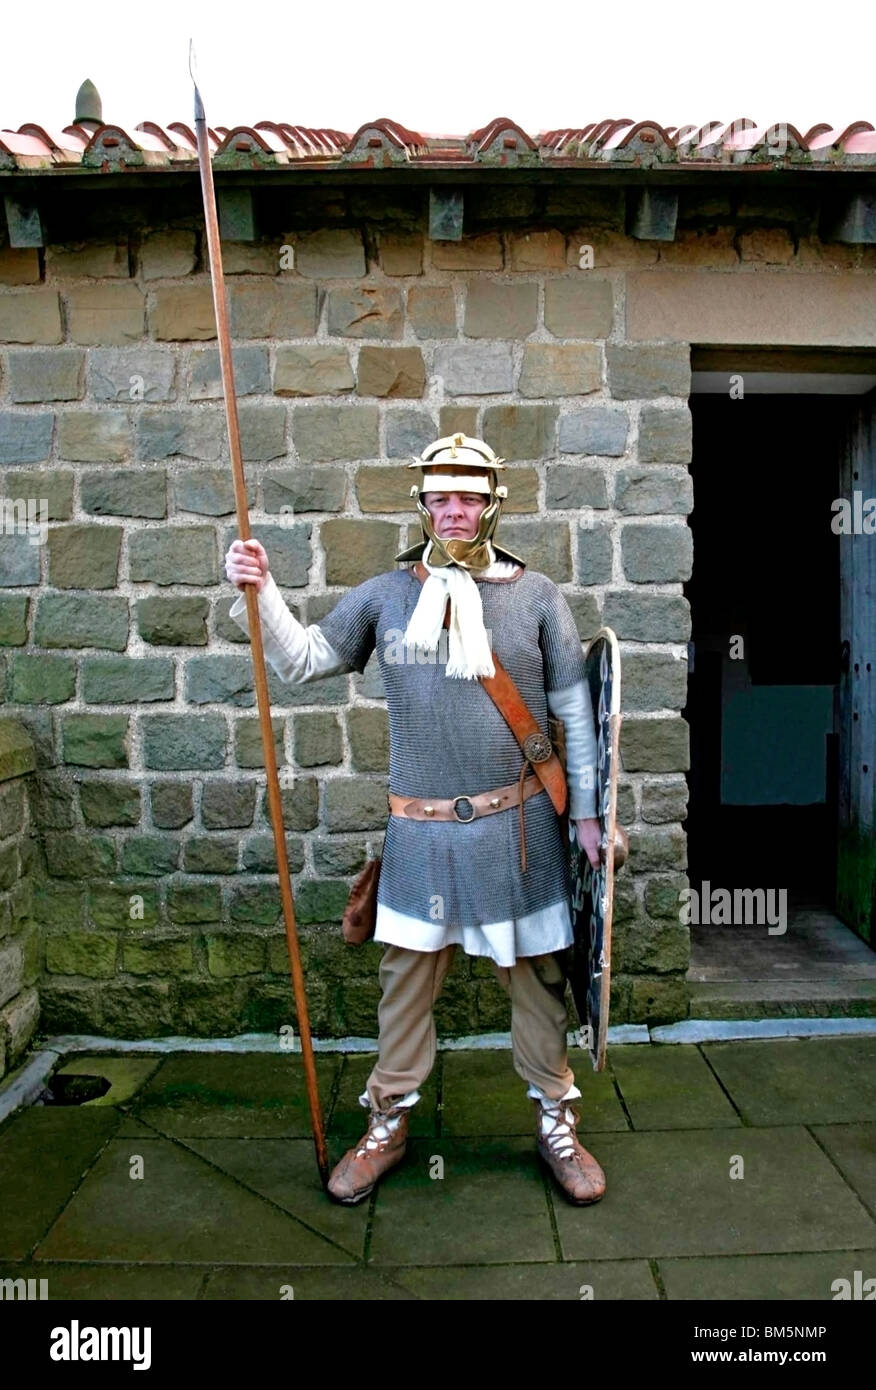 Römer Kostüm gekleidet Soldat auf Wache Position mit Speer und Schild, Helm und Rüstung Farbe Stockfoto